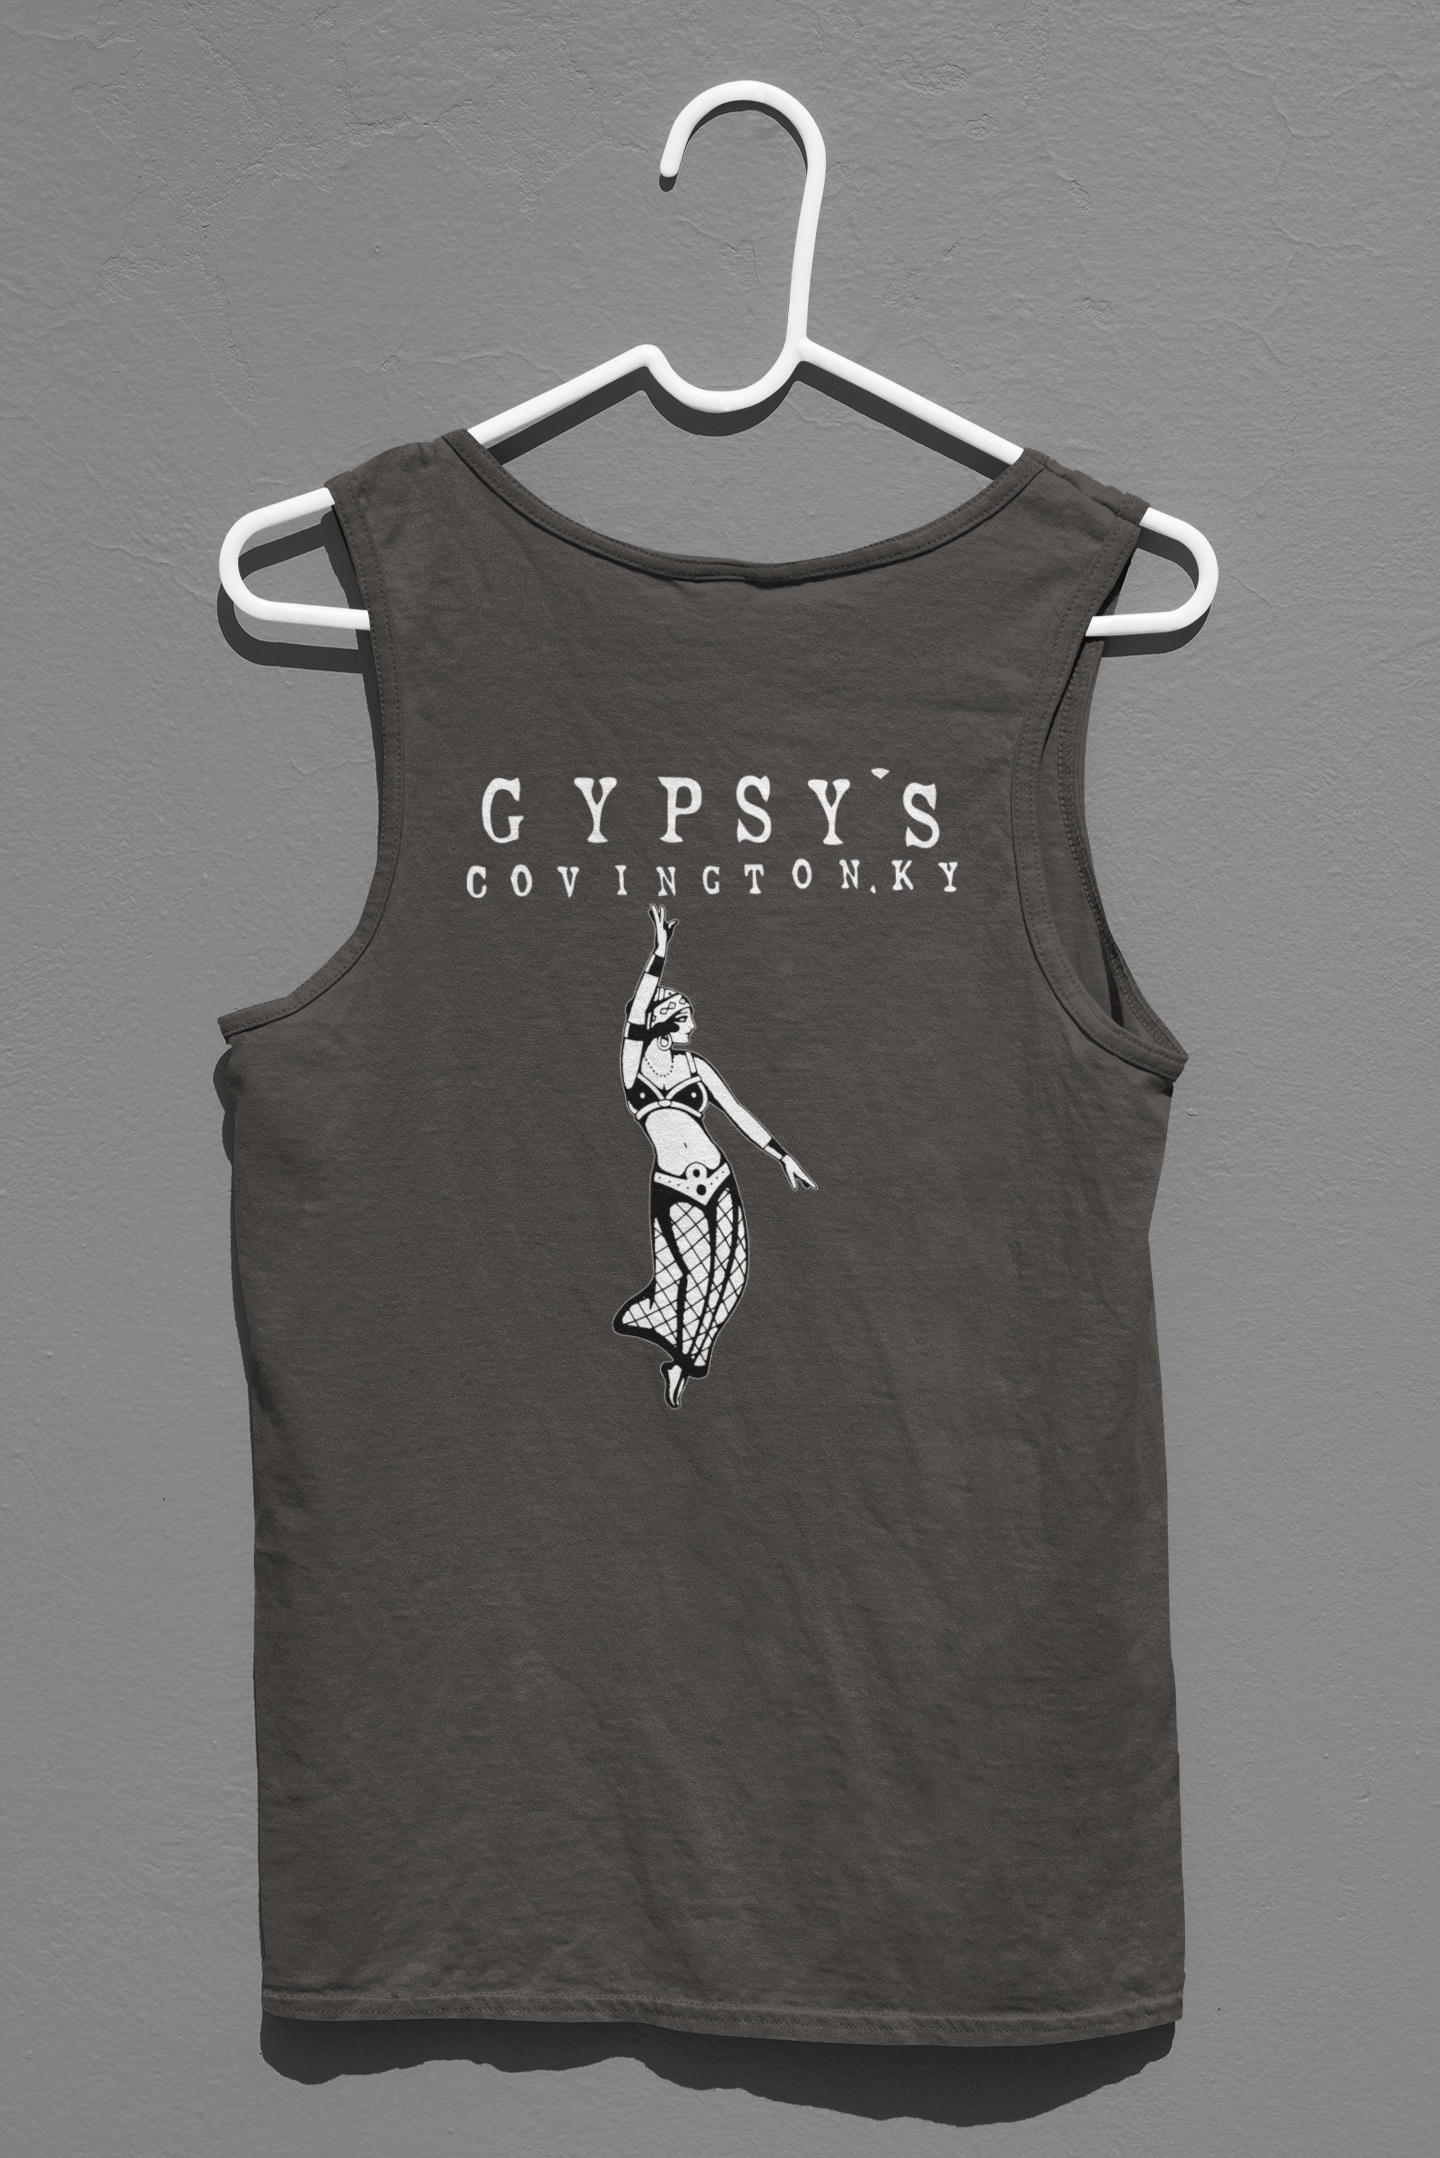 Unisex Jersey Tank | Gypsy's Dancing Gypsy Lady (by @tylerabnertattoo)